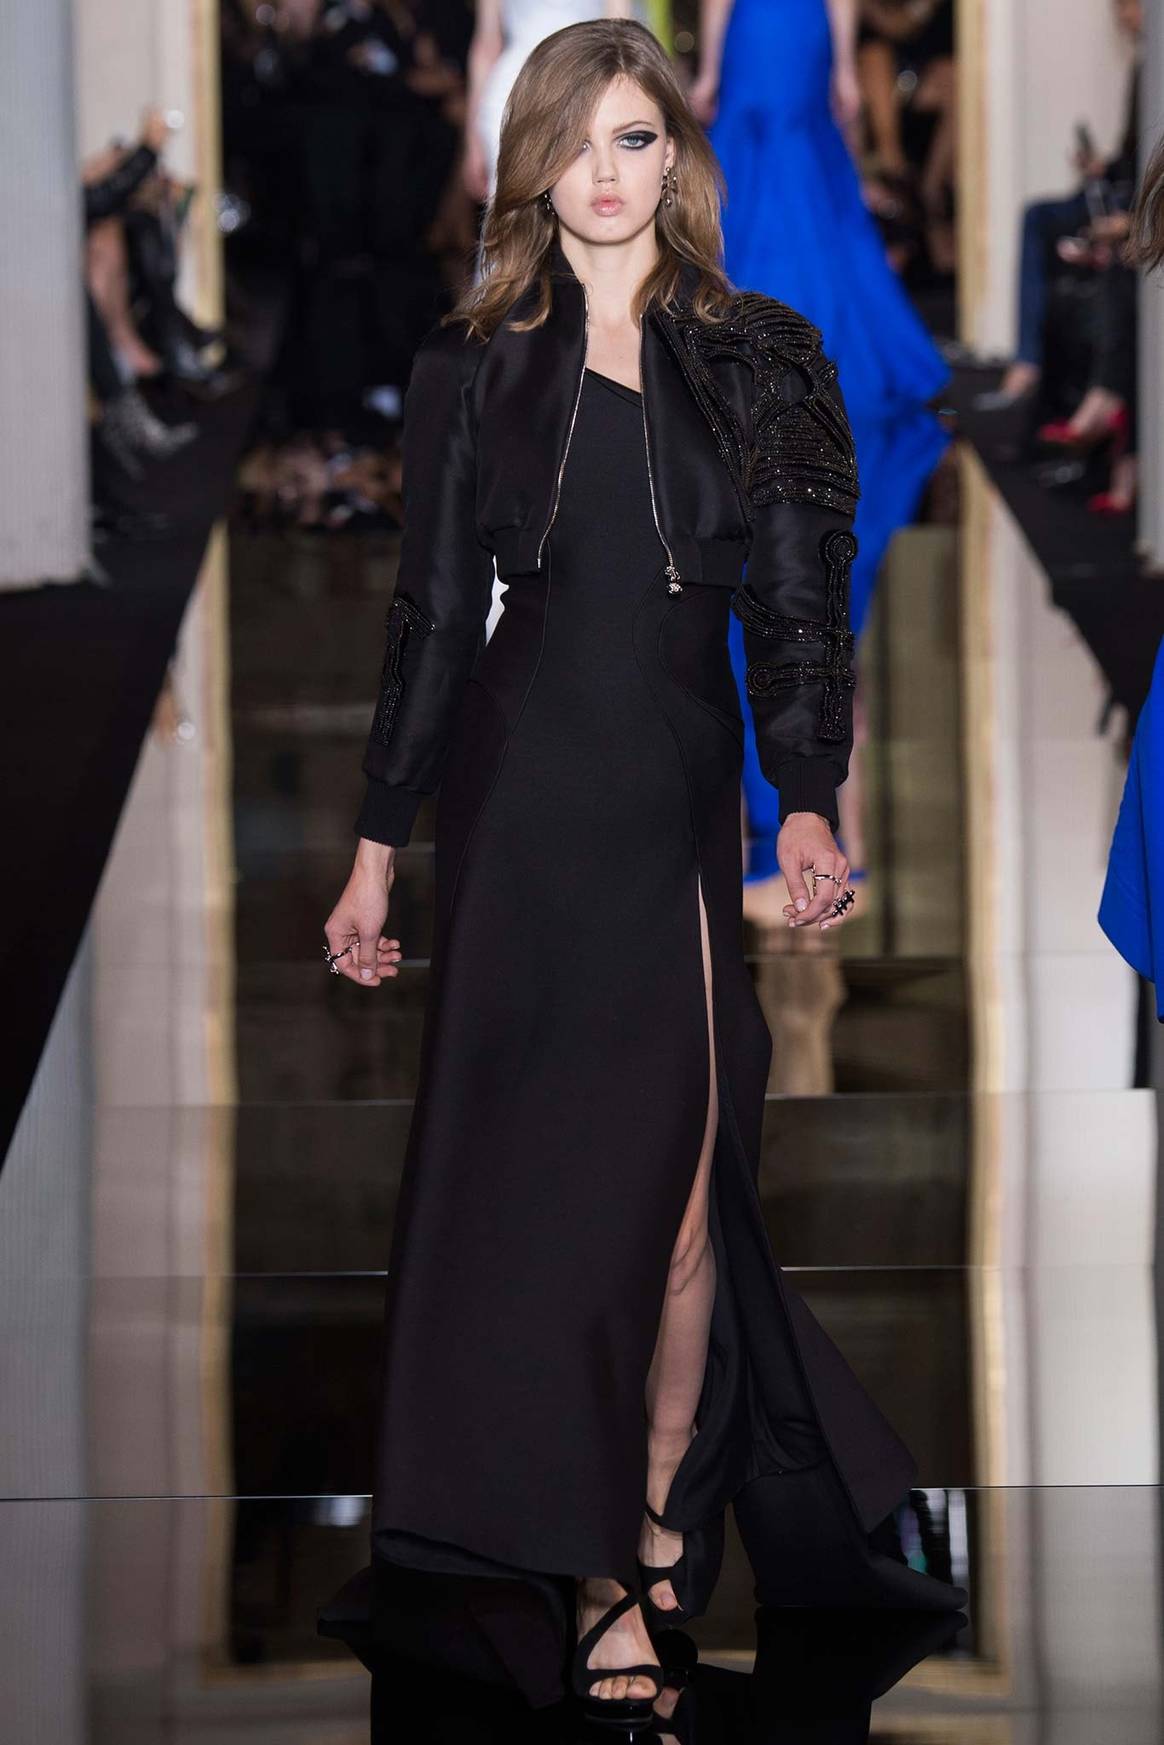 Versace ouvre le bal des défilés haute couture en célébrant les courbes féminines